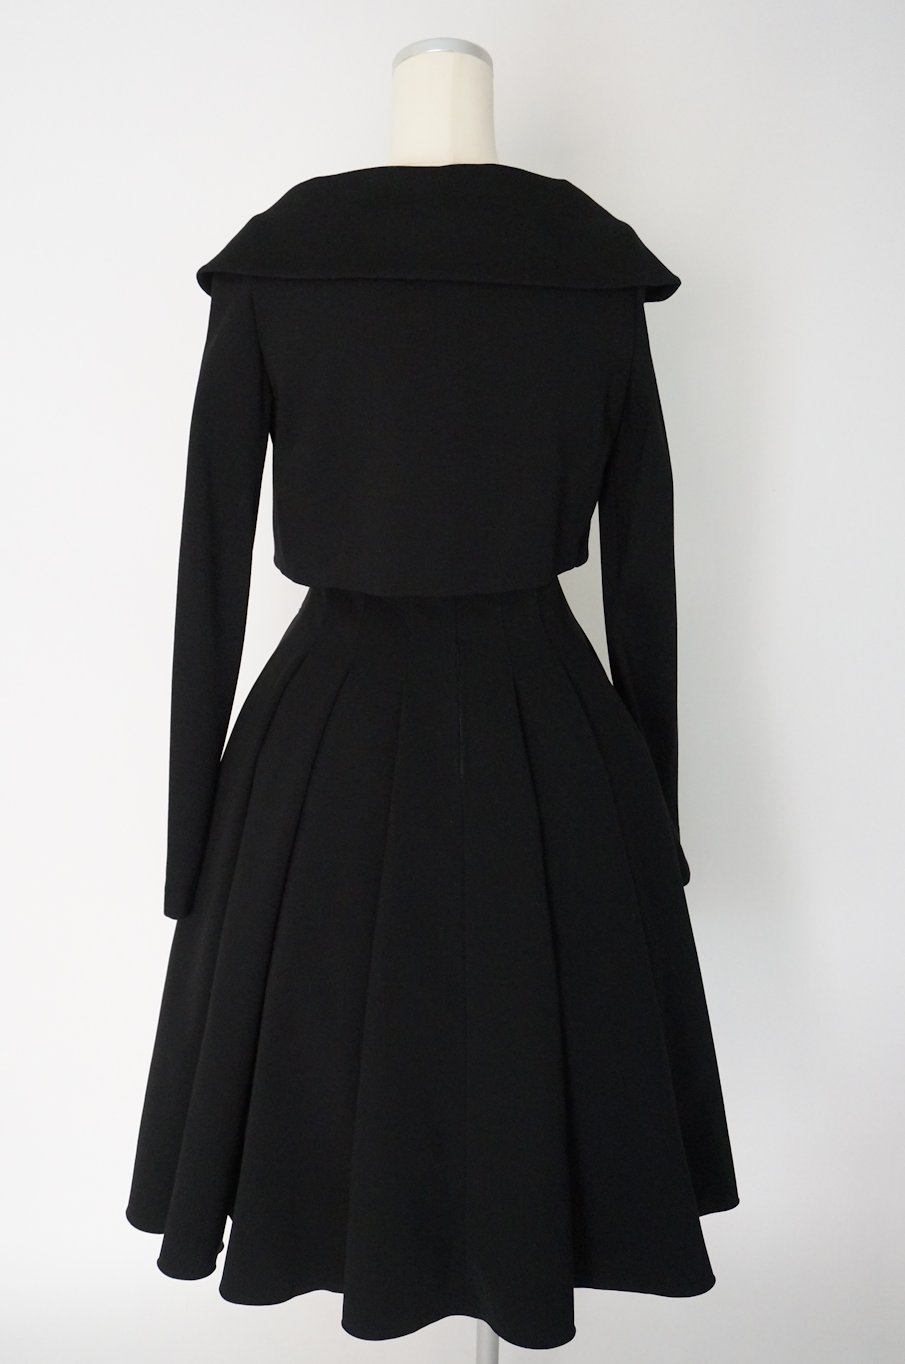 フォクシー 襟付きショートジャケット38 / レンタルリトルブラックドレス テン Rental Little Black Dress ten.